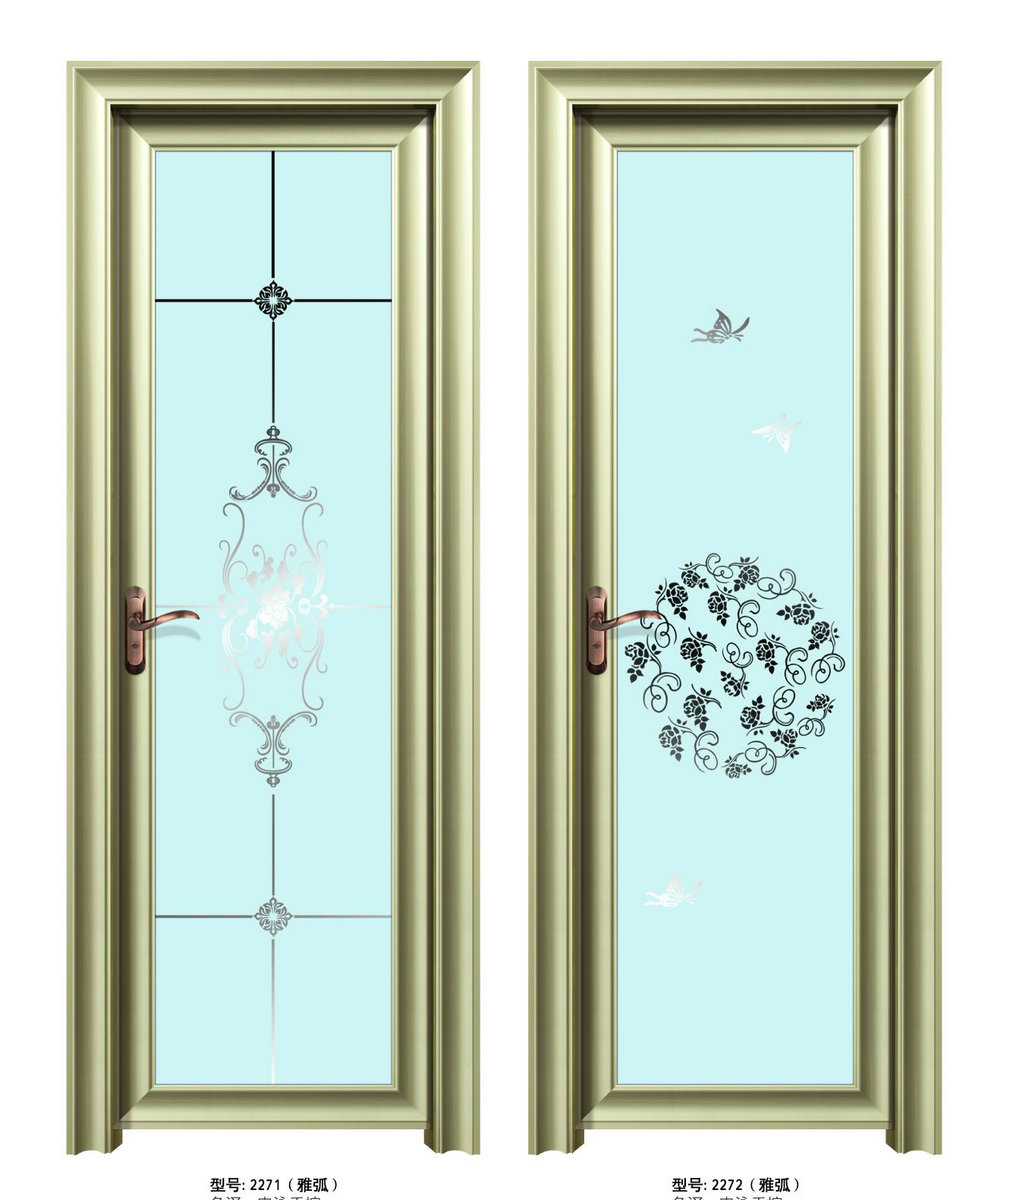 6S series of concave arc swing door design sketch